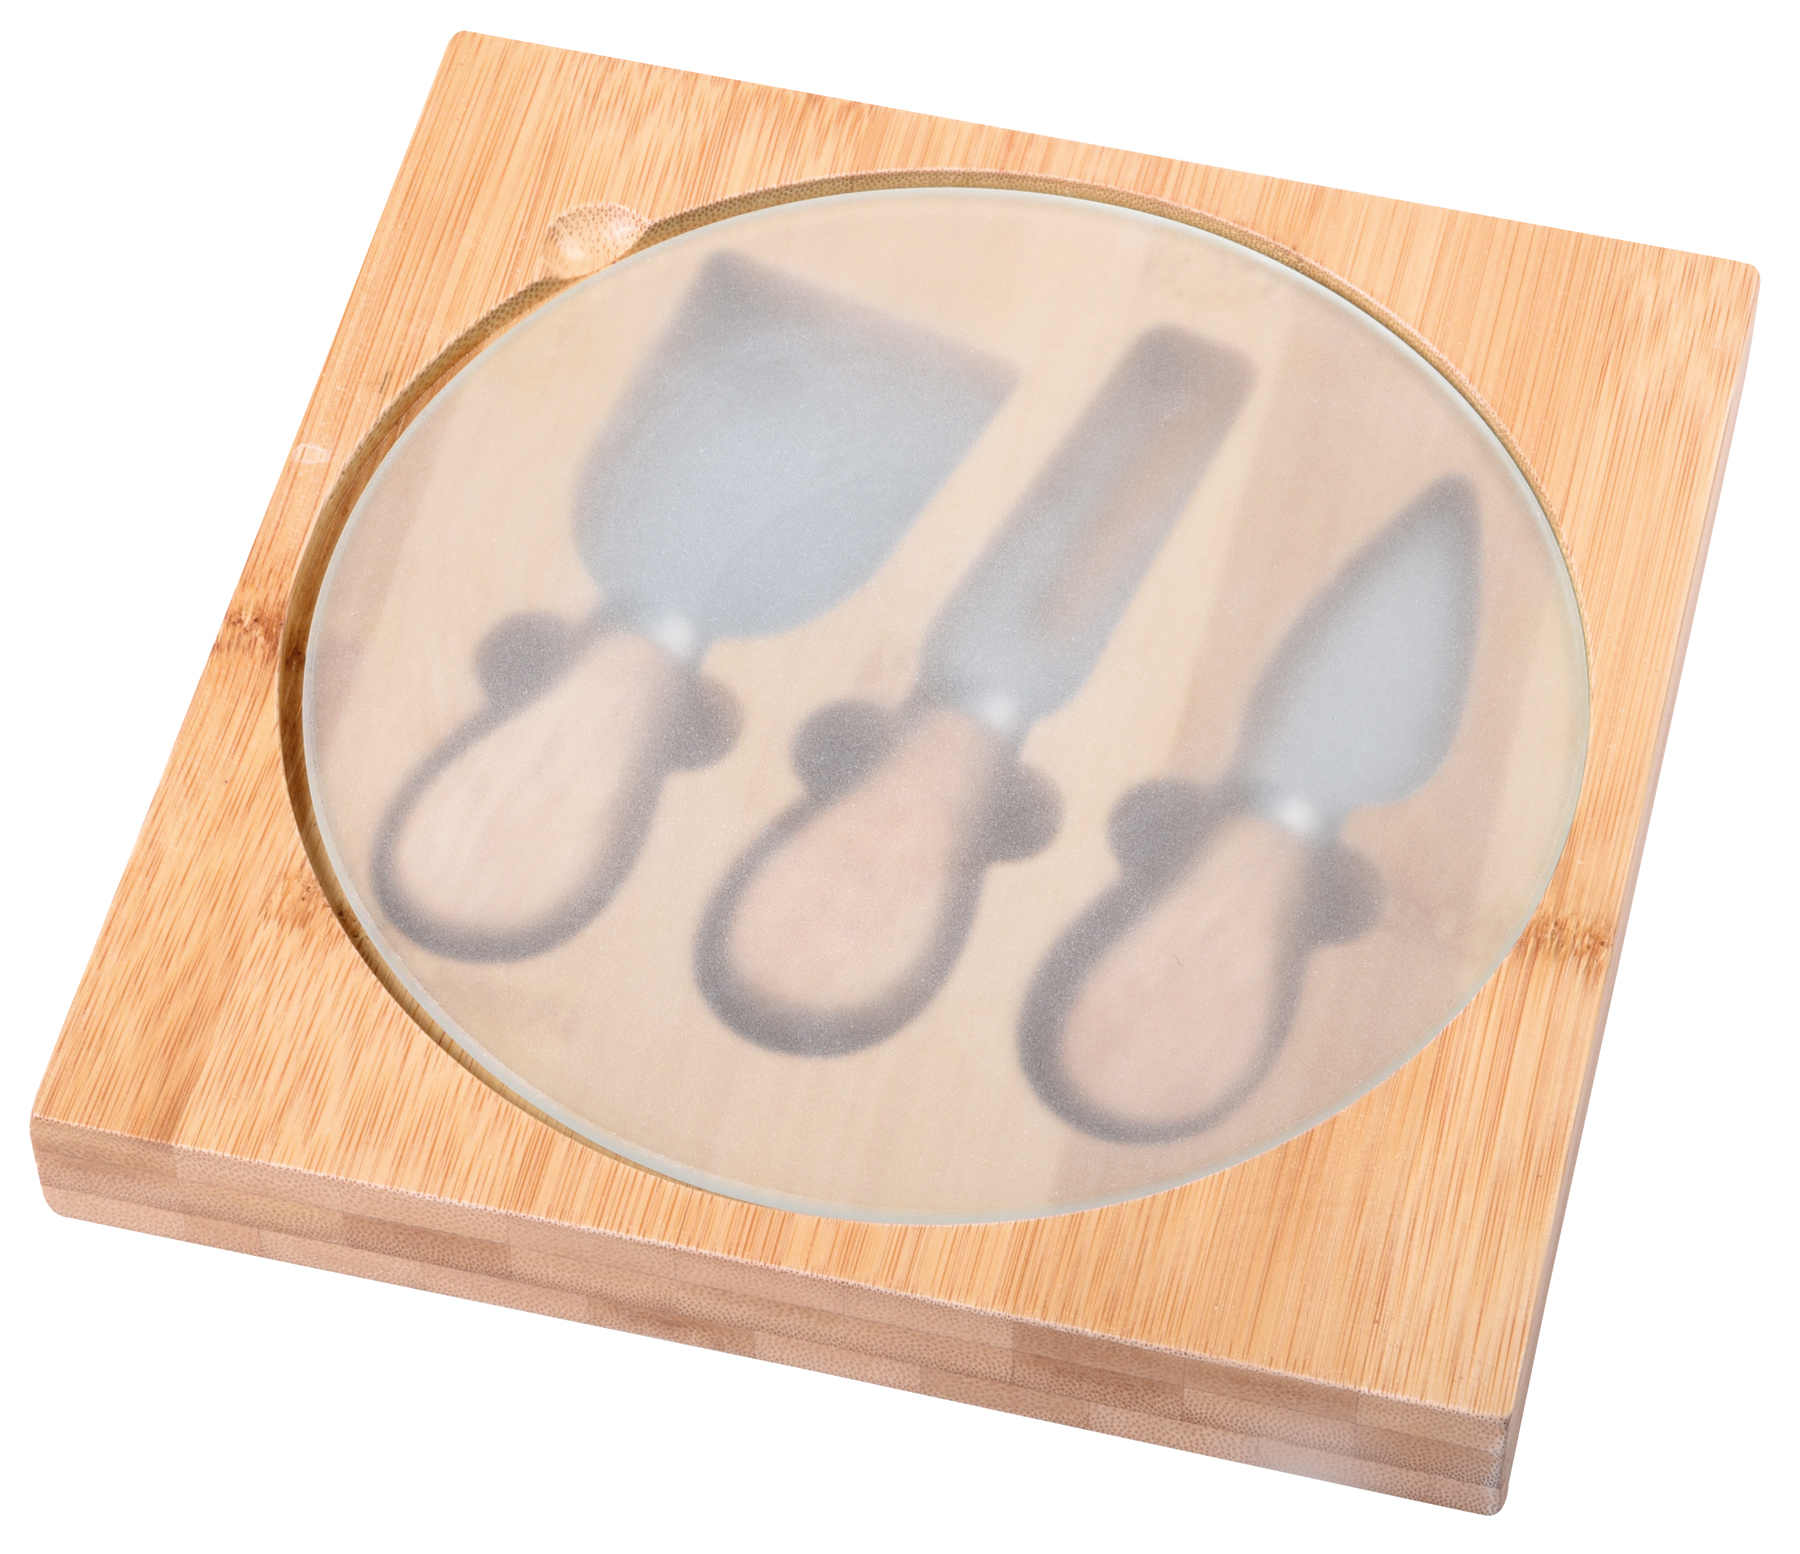 Cheese knife set ORBITY - brown